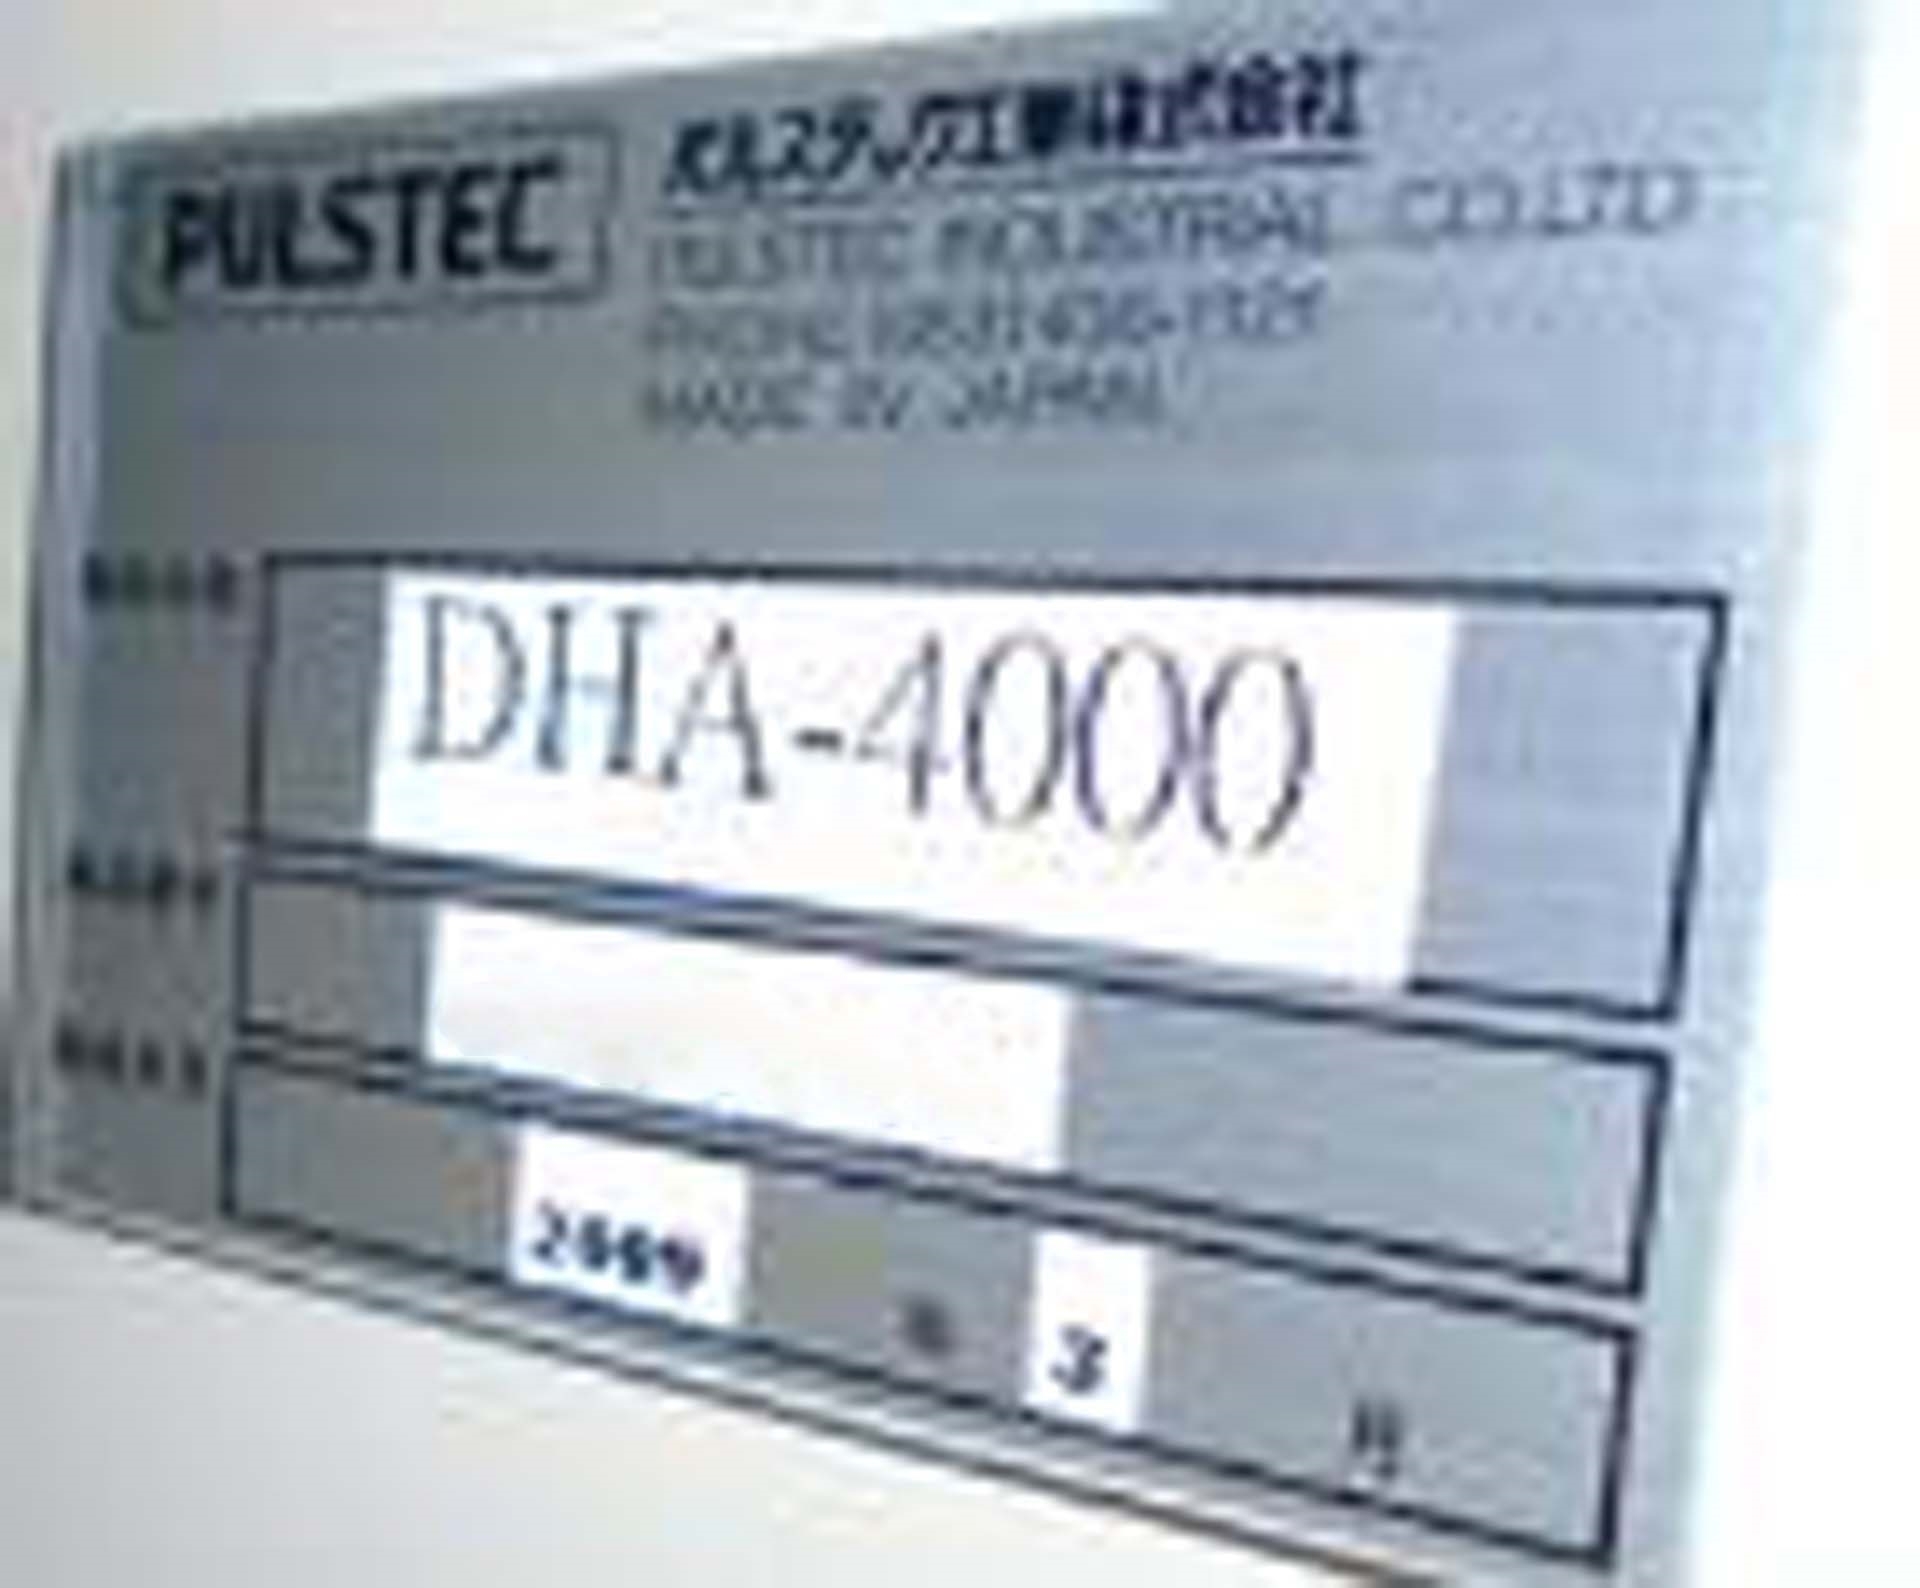 Foto Verwendet PULSTEC DHA-4000 Zum Verkauf